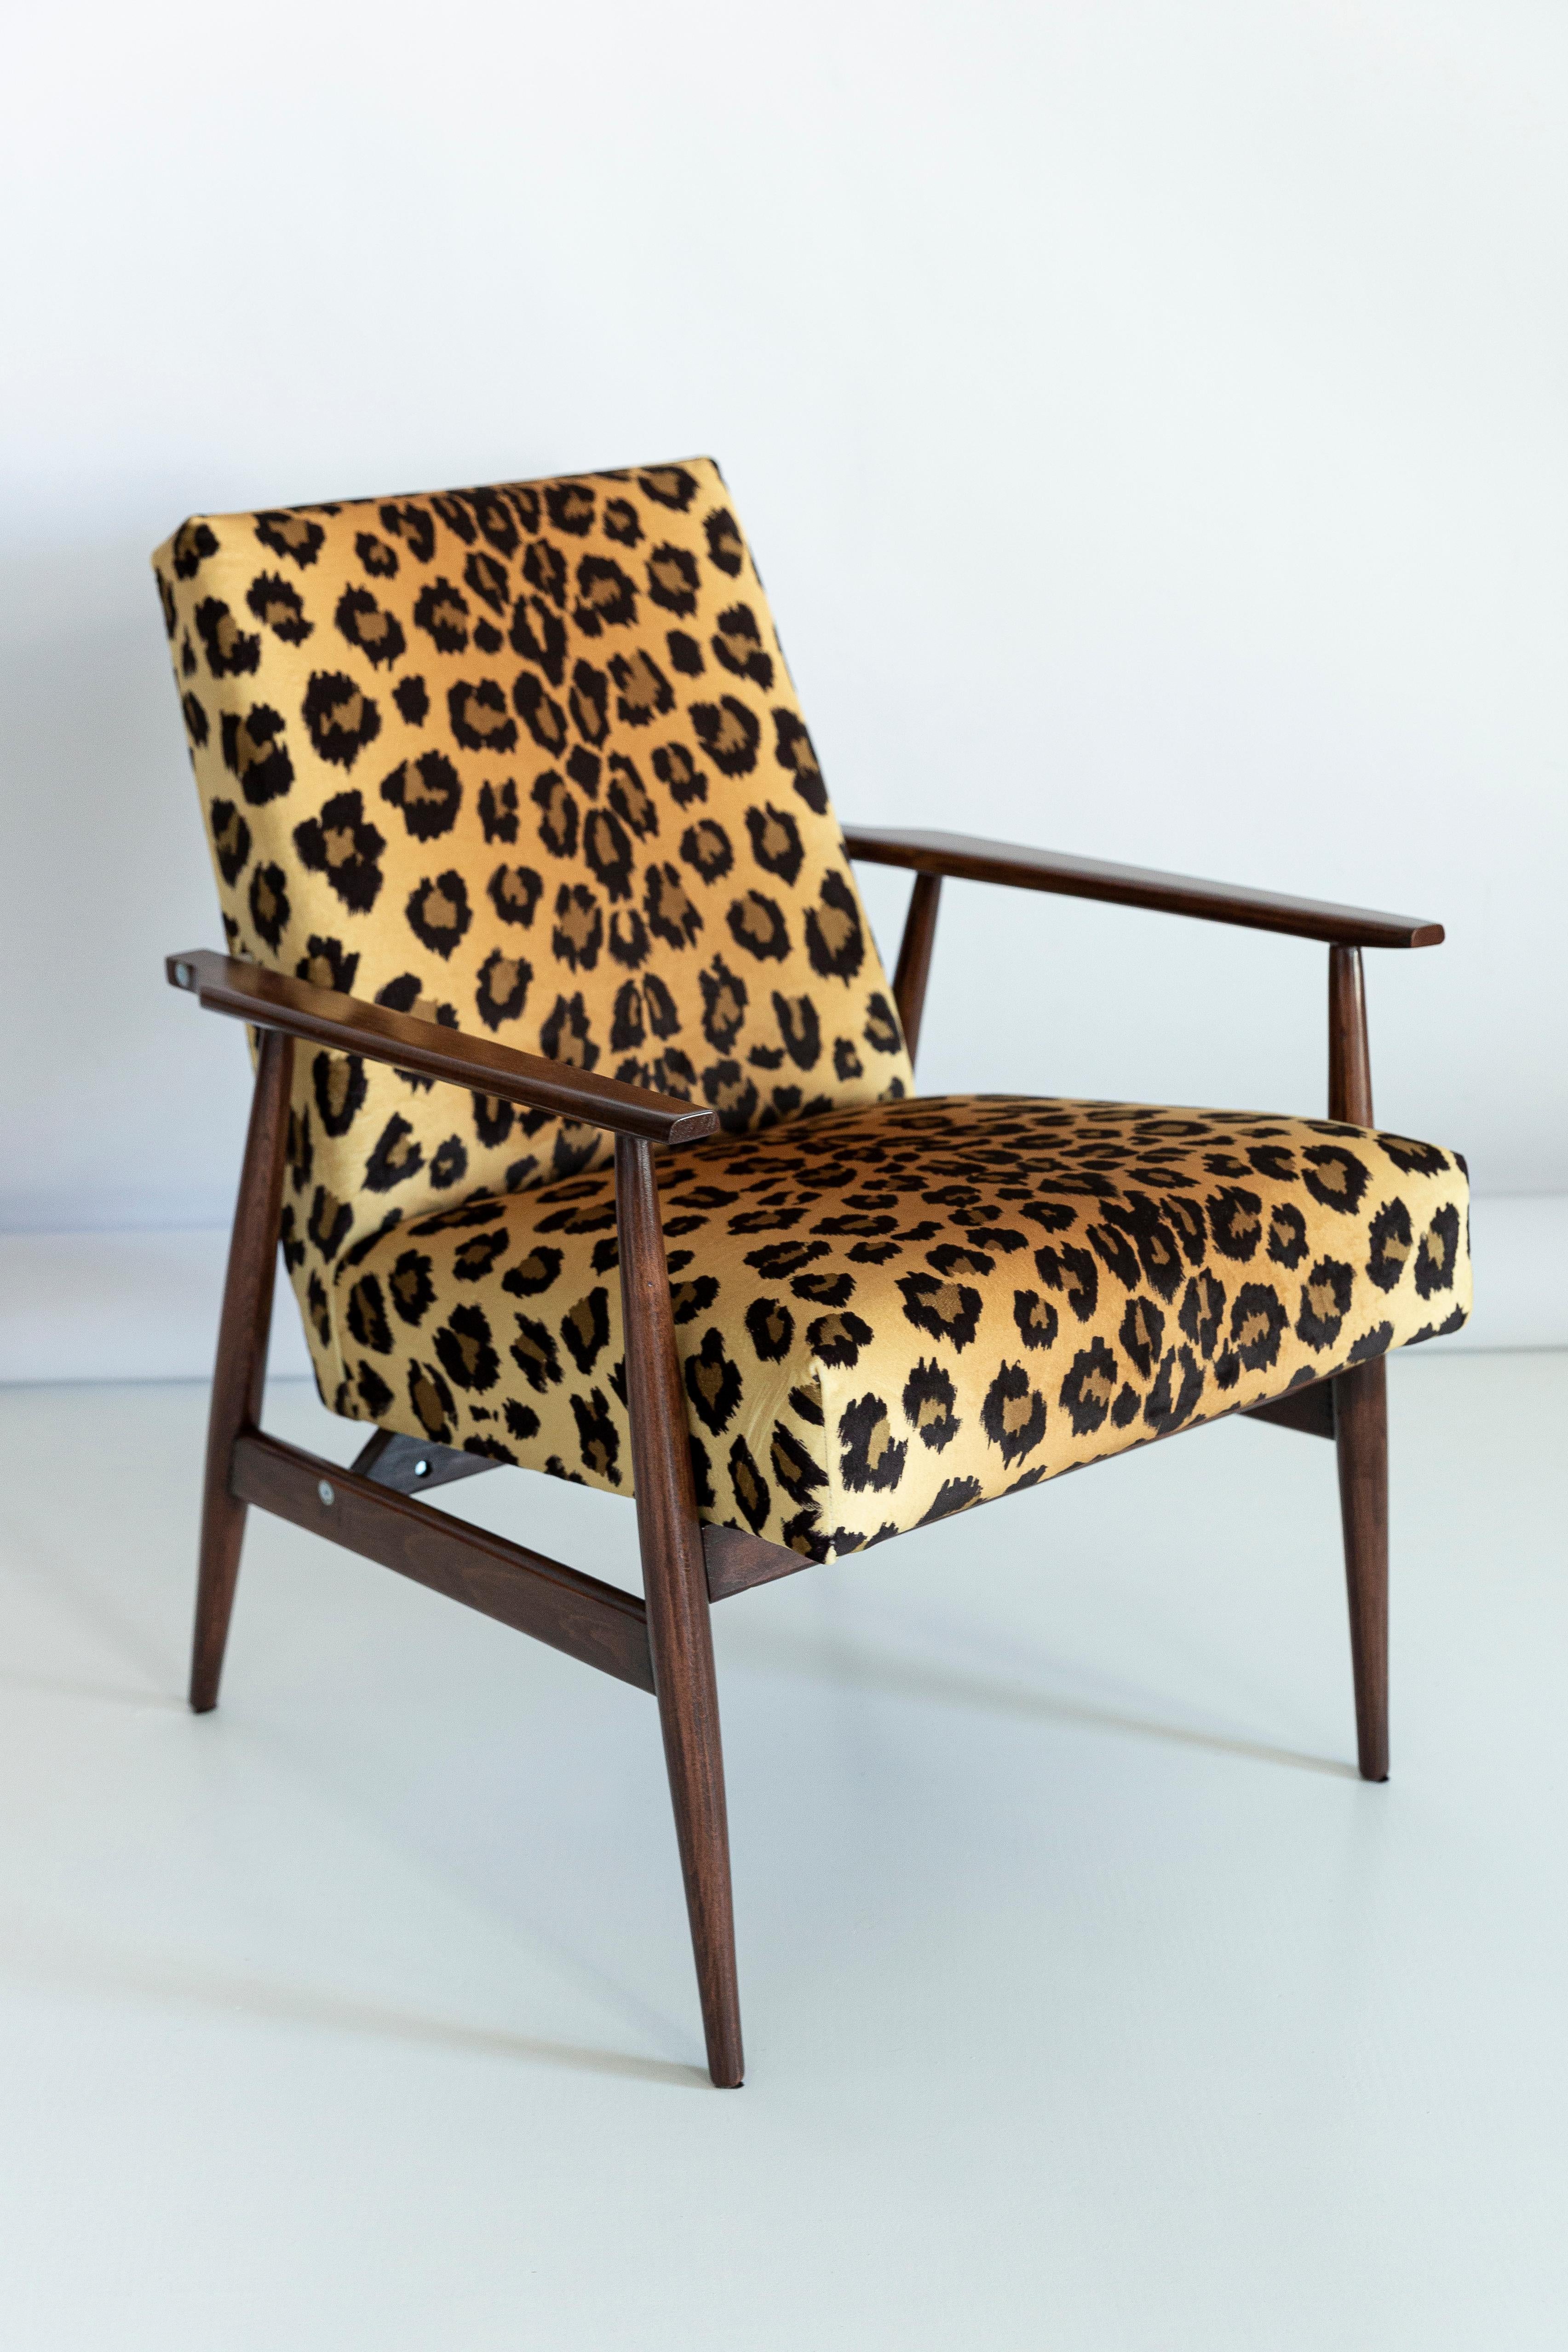 Satz von zwölf schönen, restaurierten Sesseln, entworfen von Henryk Lis. Möbel nach kompletter Renovierung durch Schreiner und Polsterei. Der Stoff, der mit einer Rückenlehne und einer Sitzfläche bezogen ist, ist ein hochwertiger italienischer